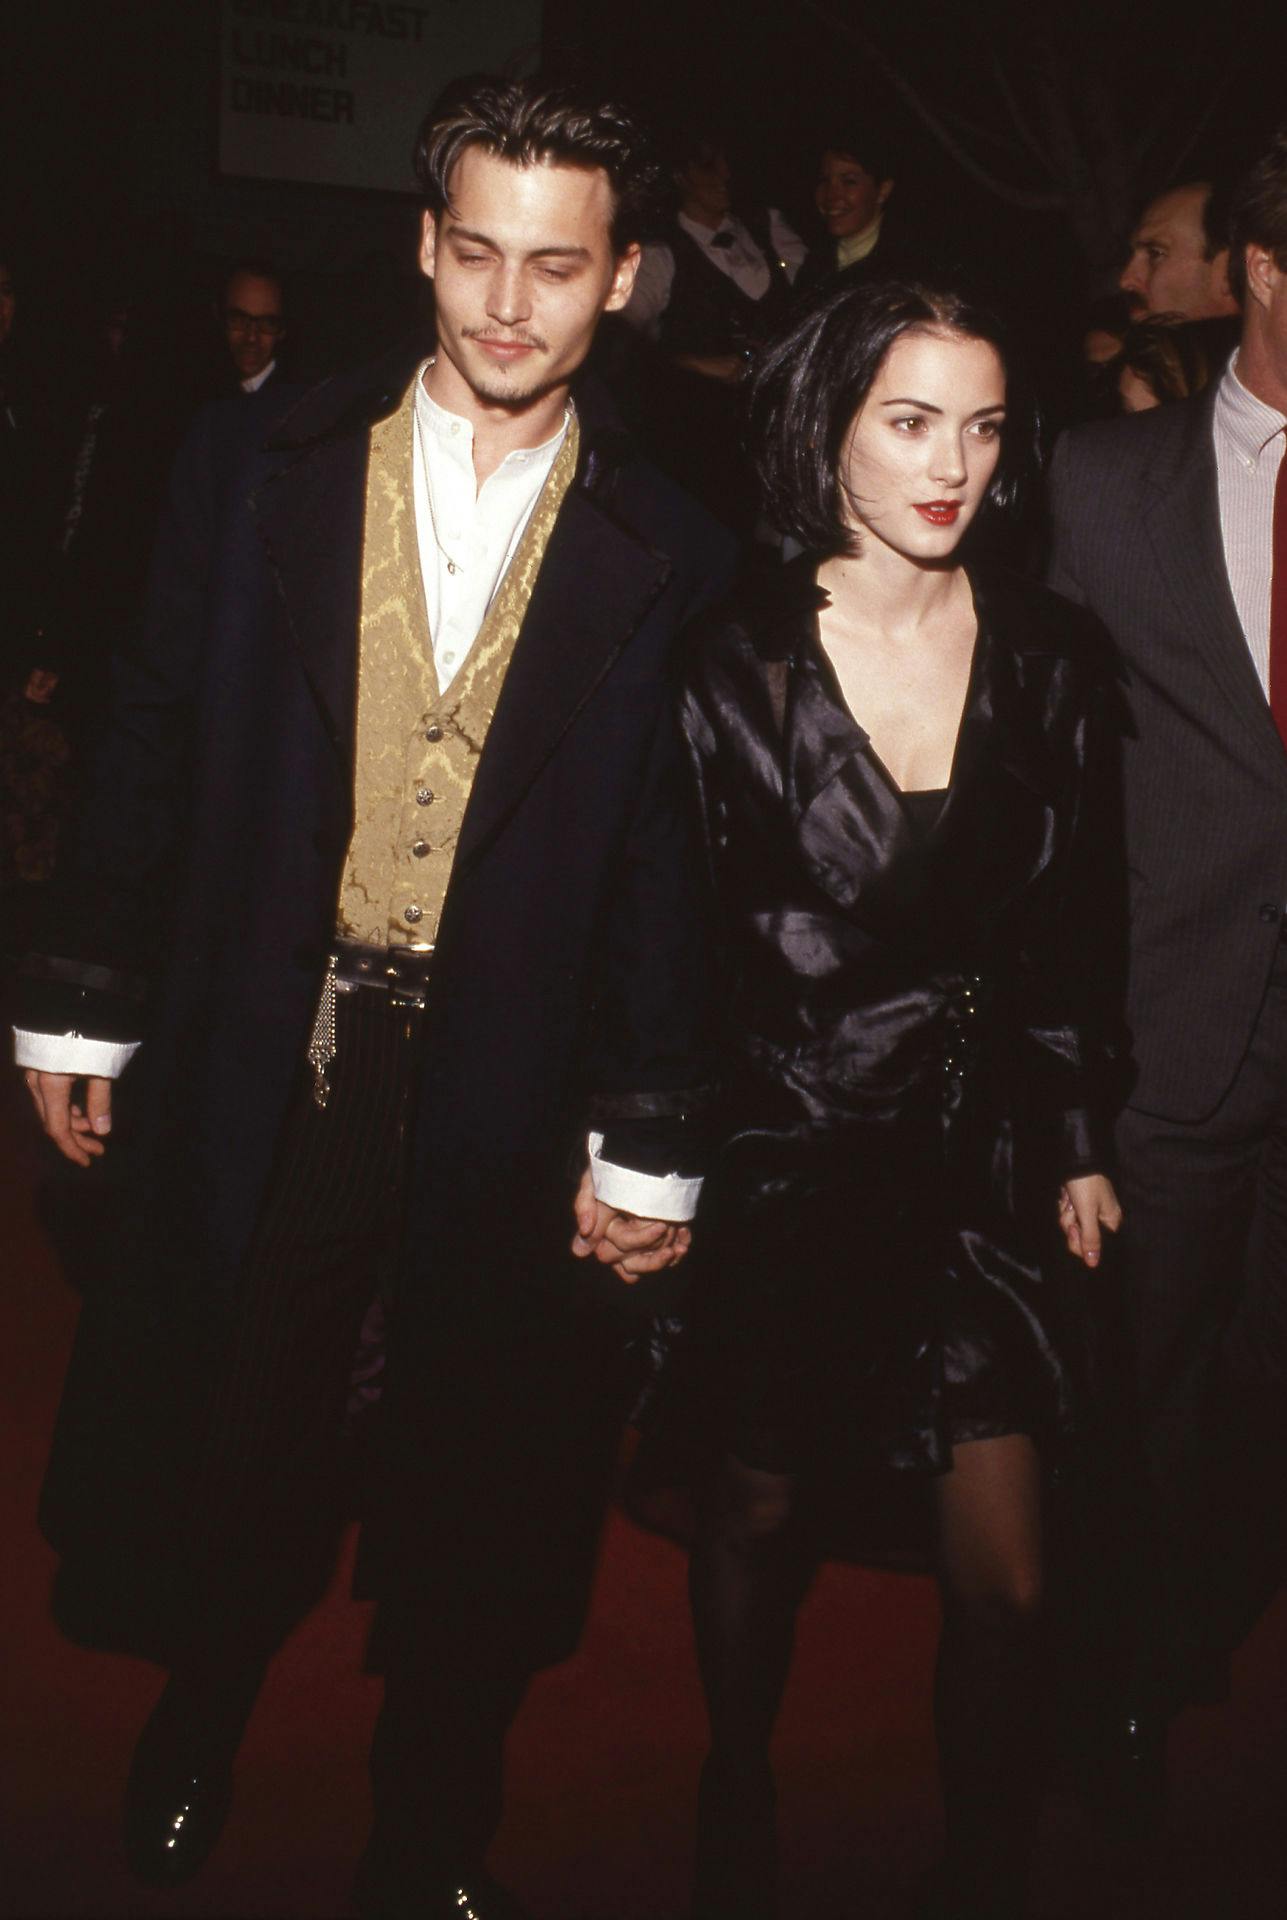 Arkivfoto af Johnny Depp and Winona Ryder, fotograferet i 1990.
